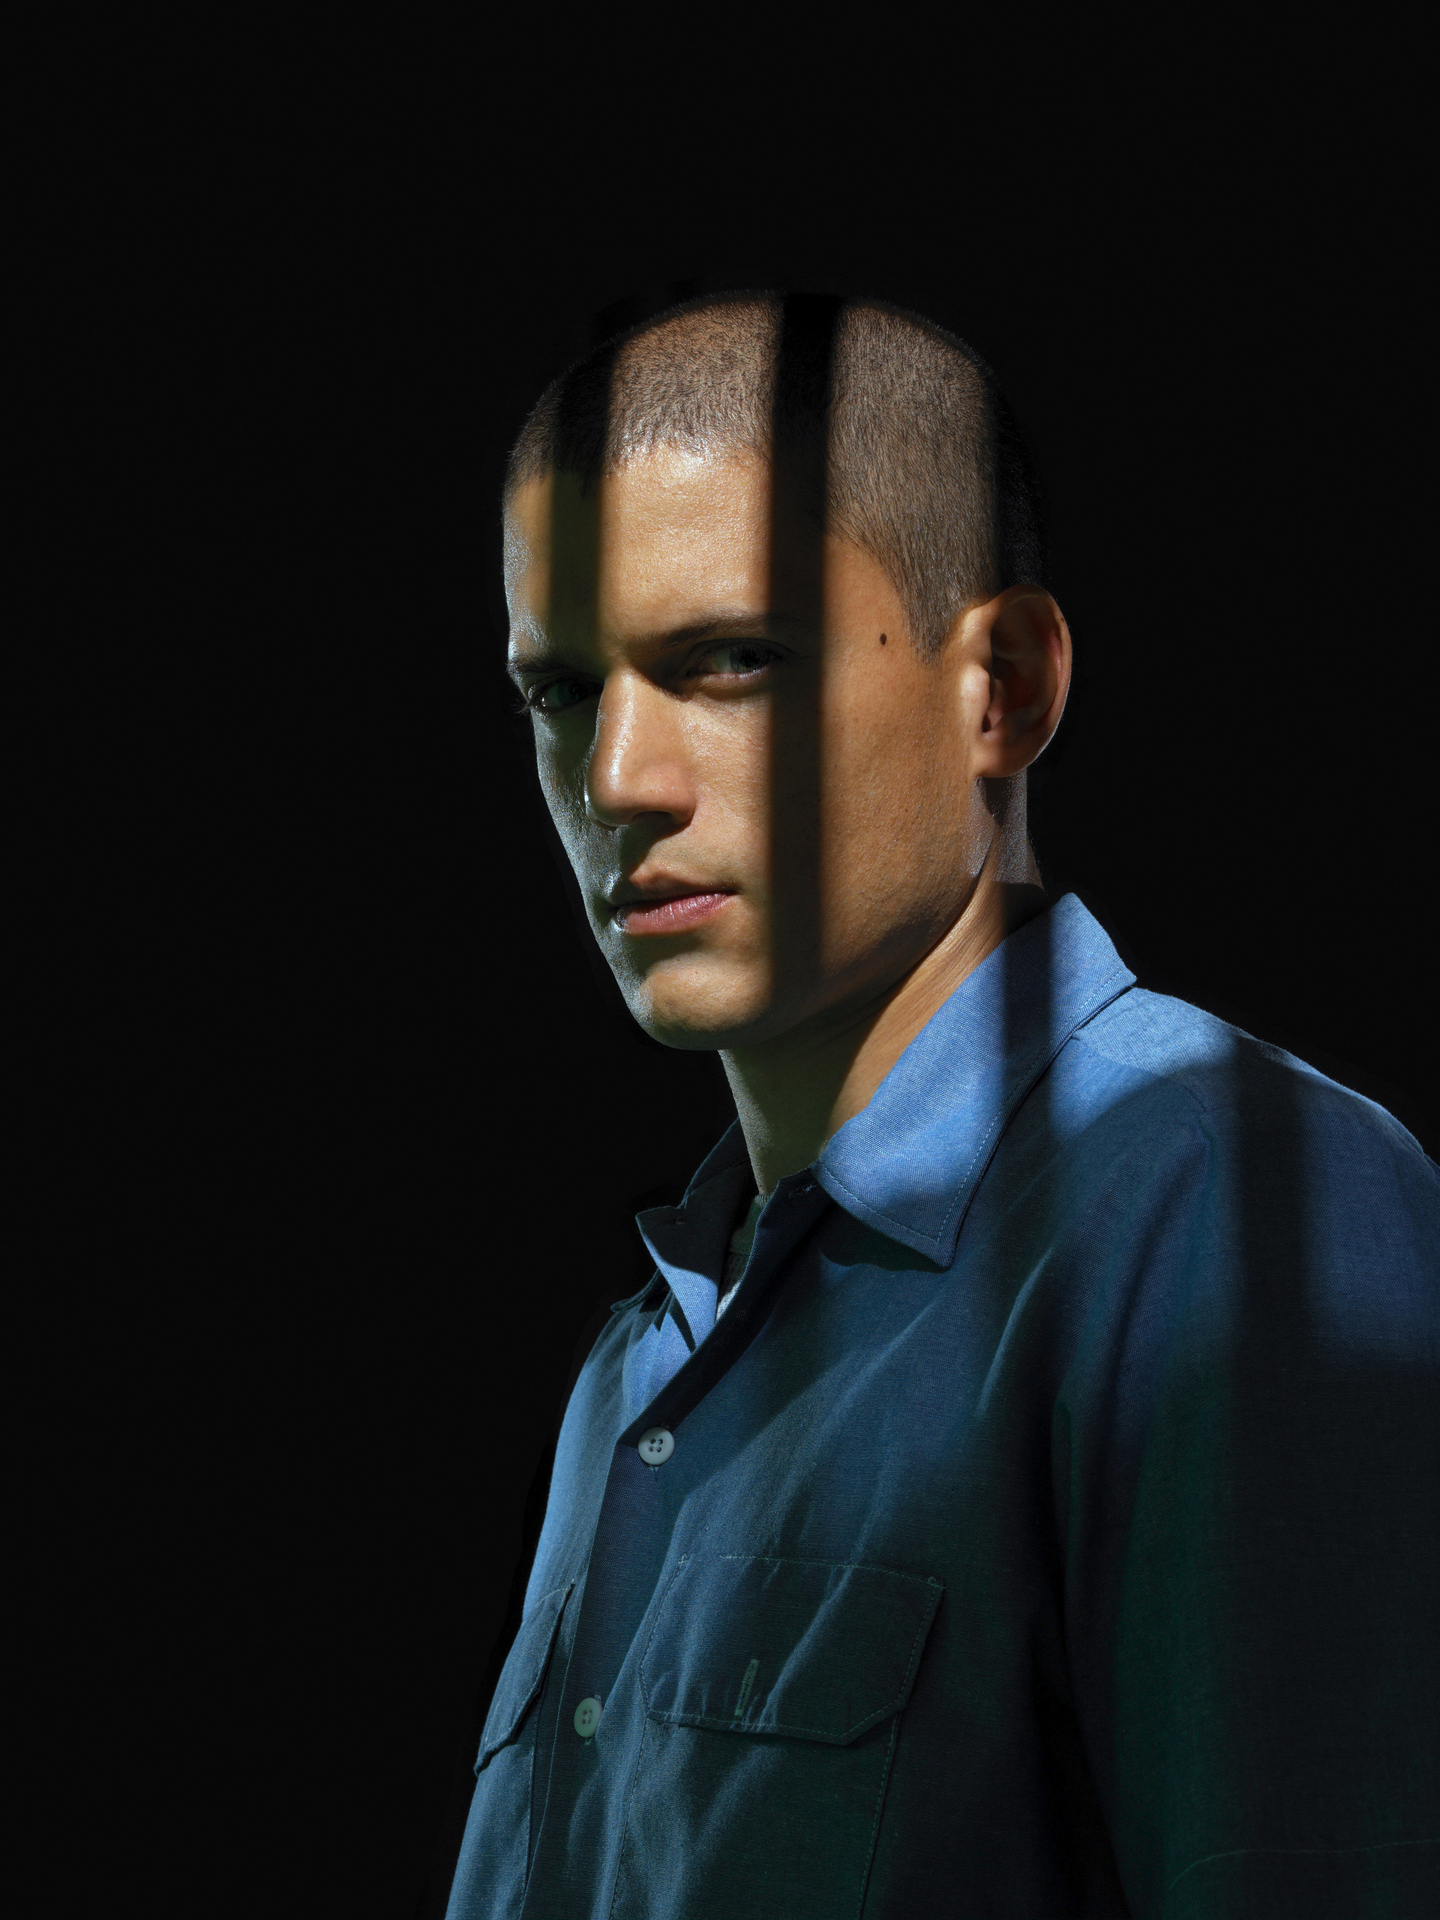 20+] Michael Scofield Desktop Wallpapers - WallpaperSafari